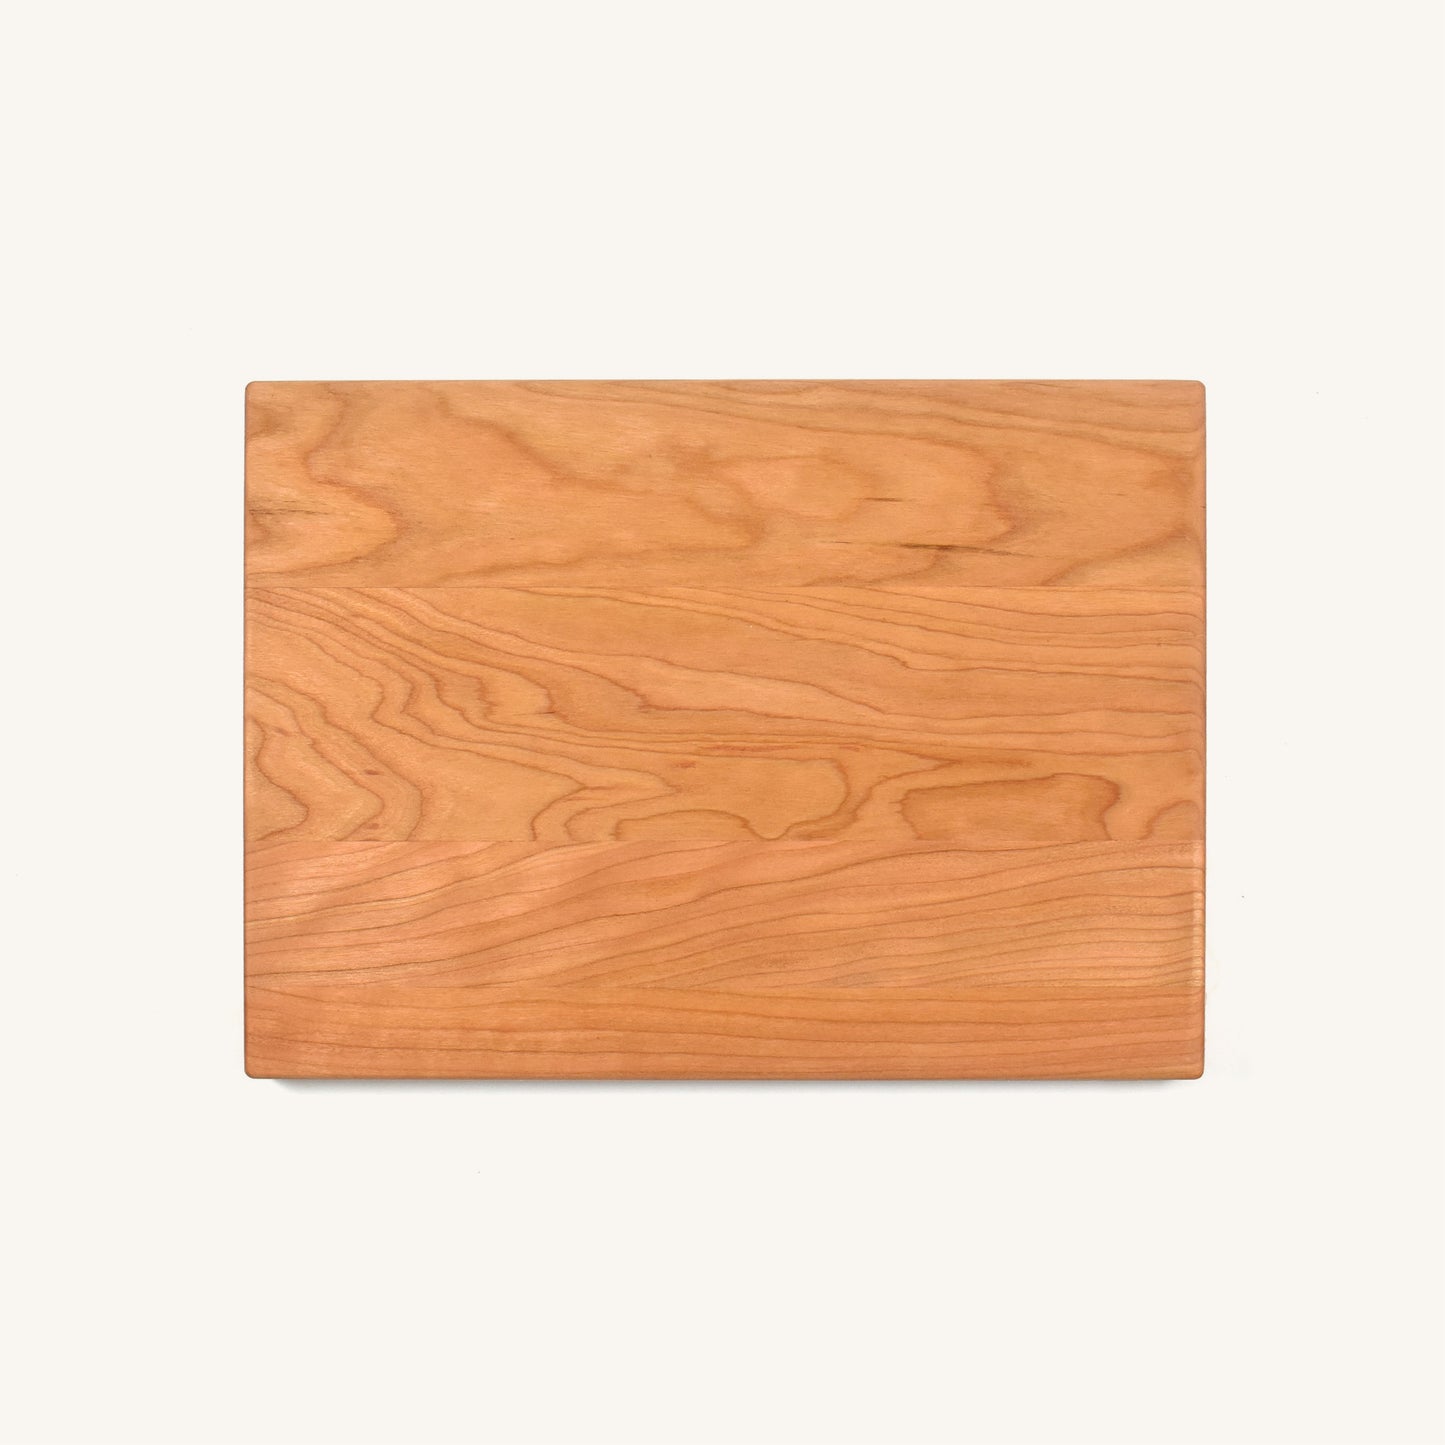 Tabla de cortar de madera con esquinas y bordes redondeados